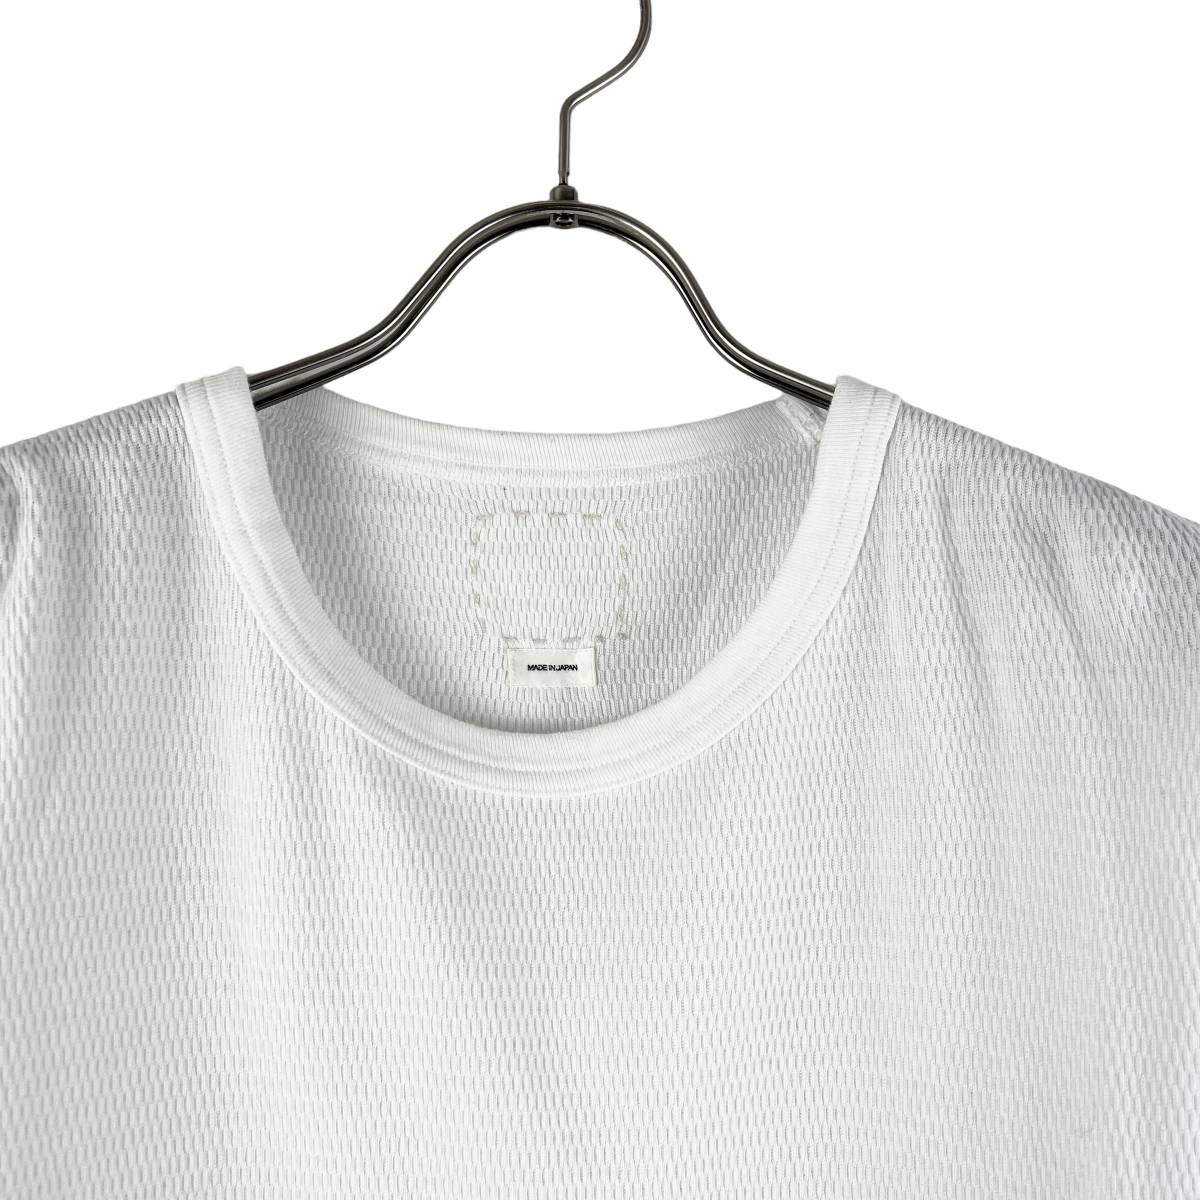 VISVIM(ビズビム) LONGSLEEVE KNIT T Shirt (white)